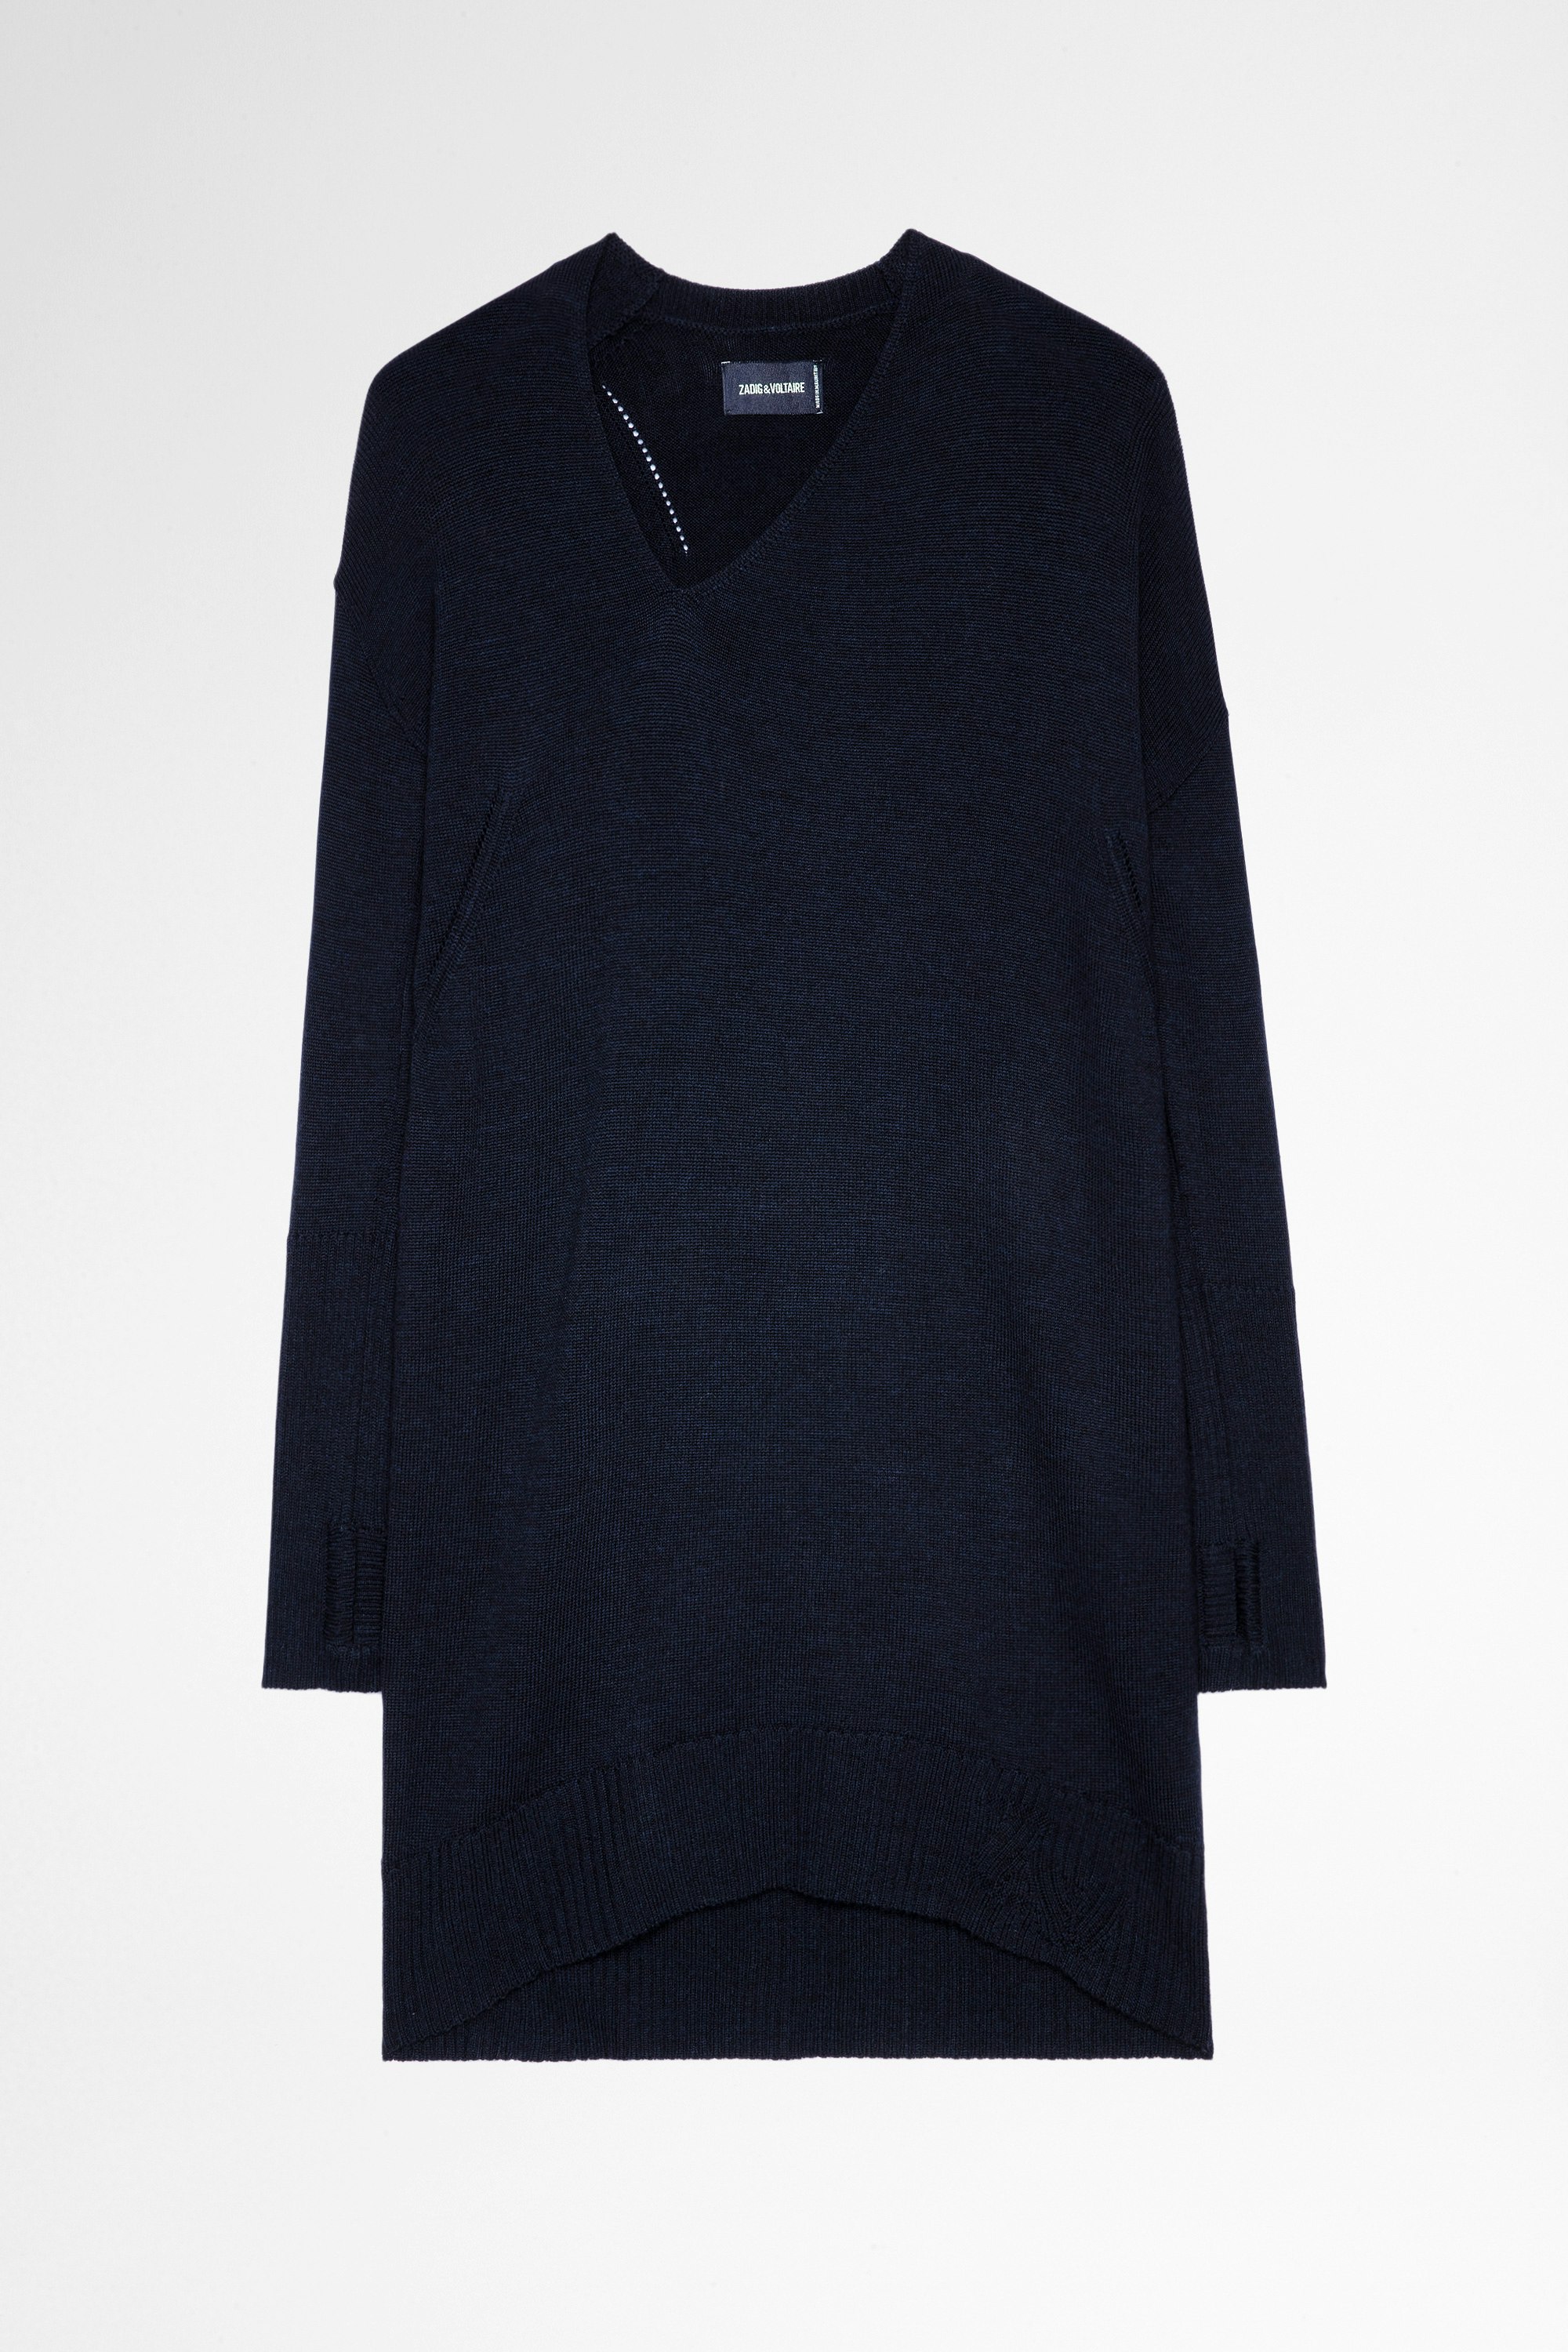 Dean Dress Women's navy blue knitted sweater dress with asymmetrical collar